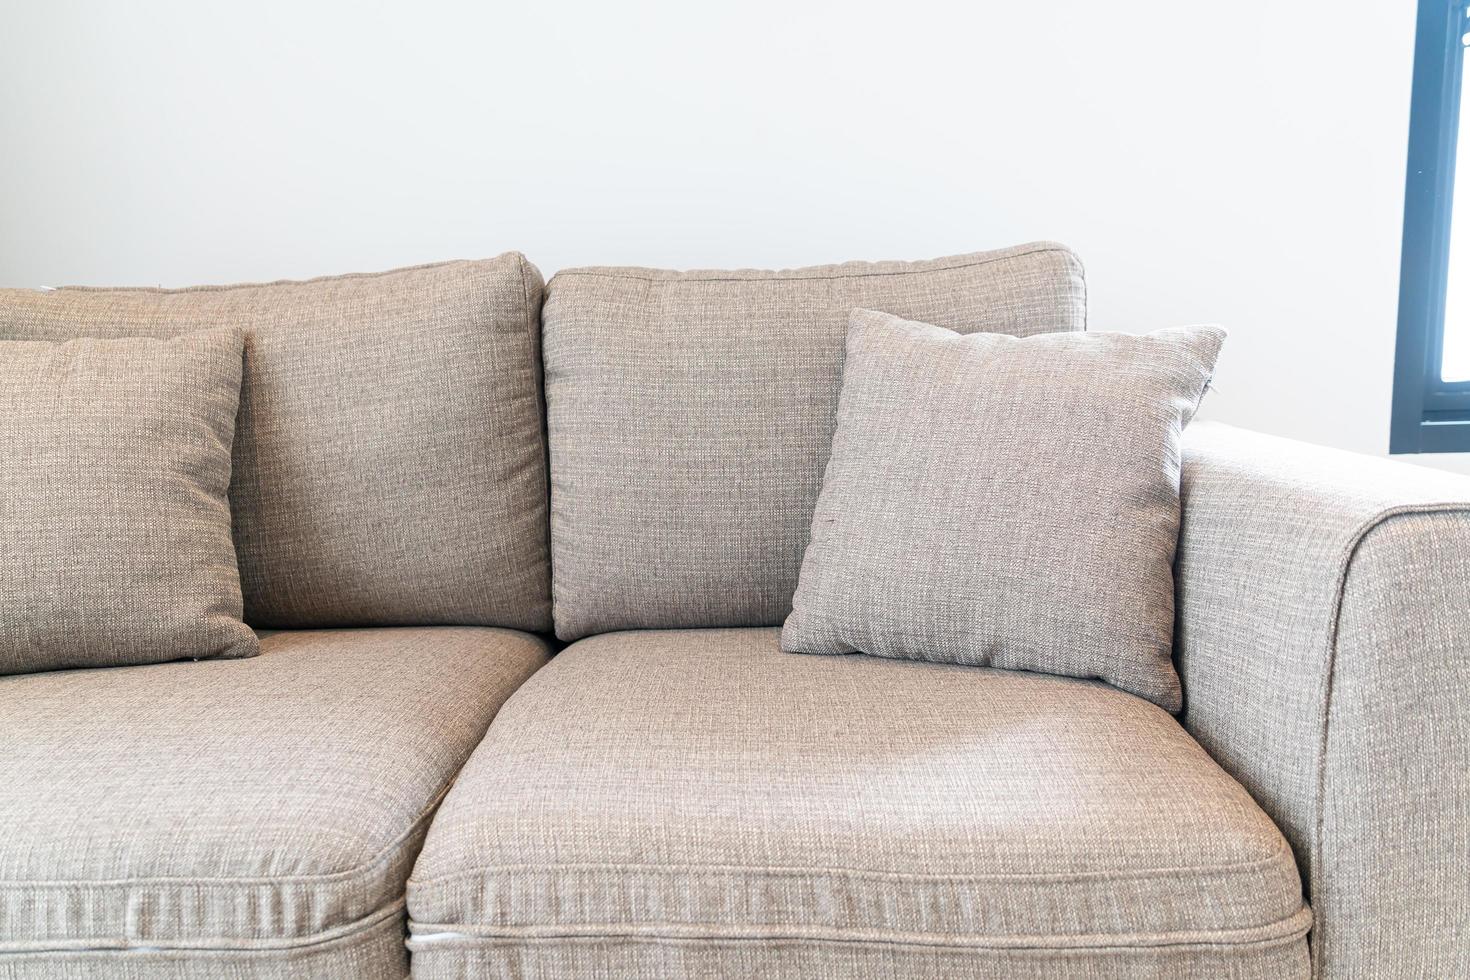 schöne Kissendekoration auf Sofa im Wohnzimmer foto